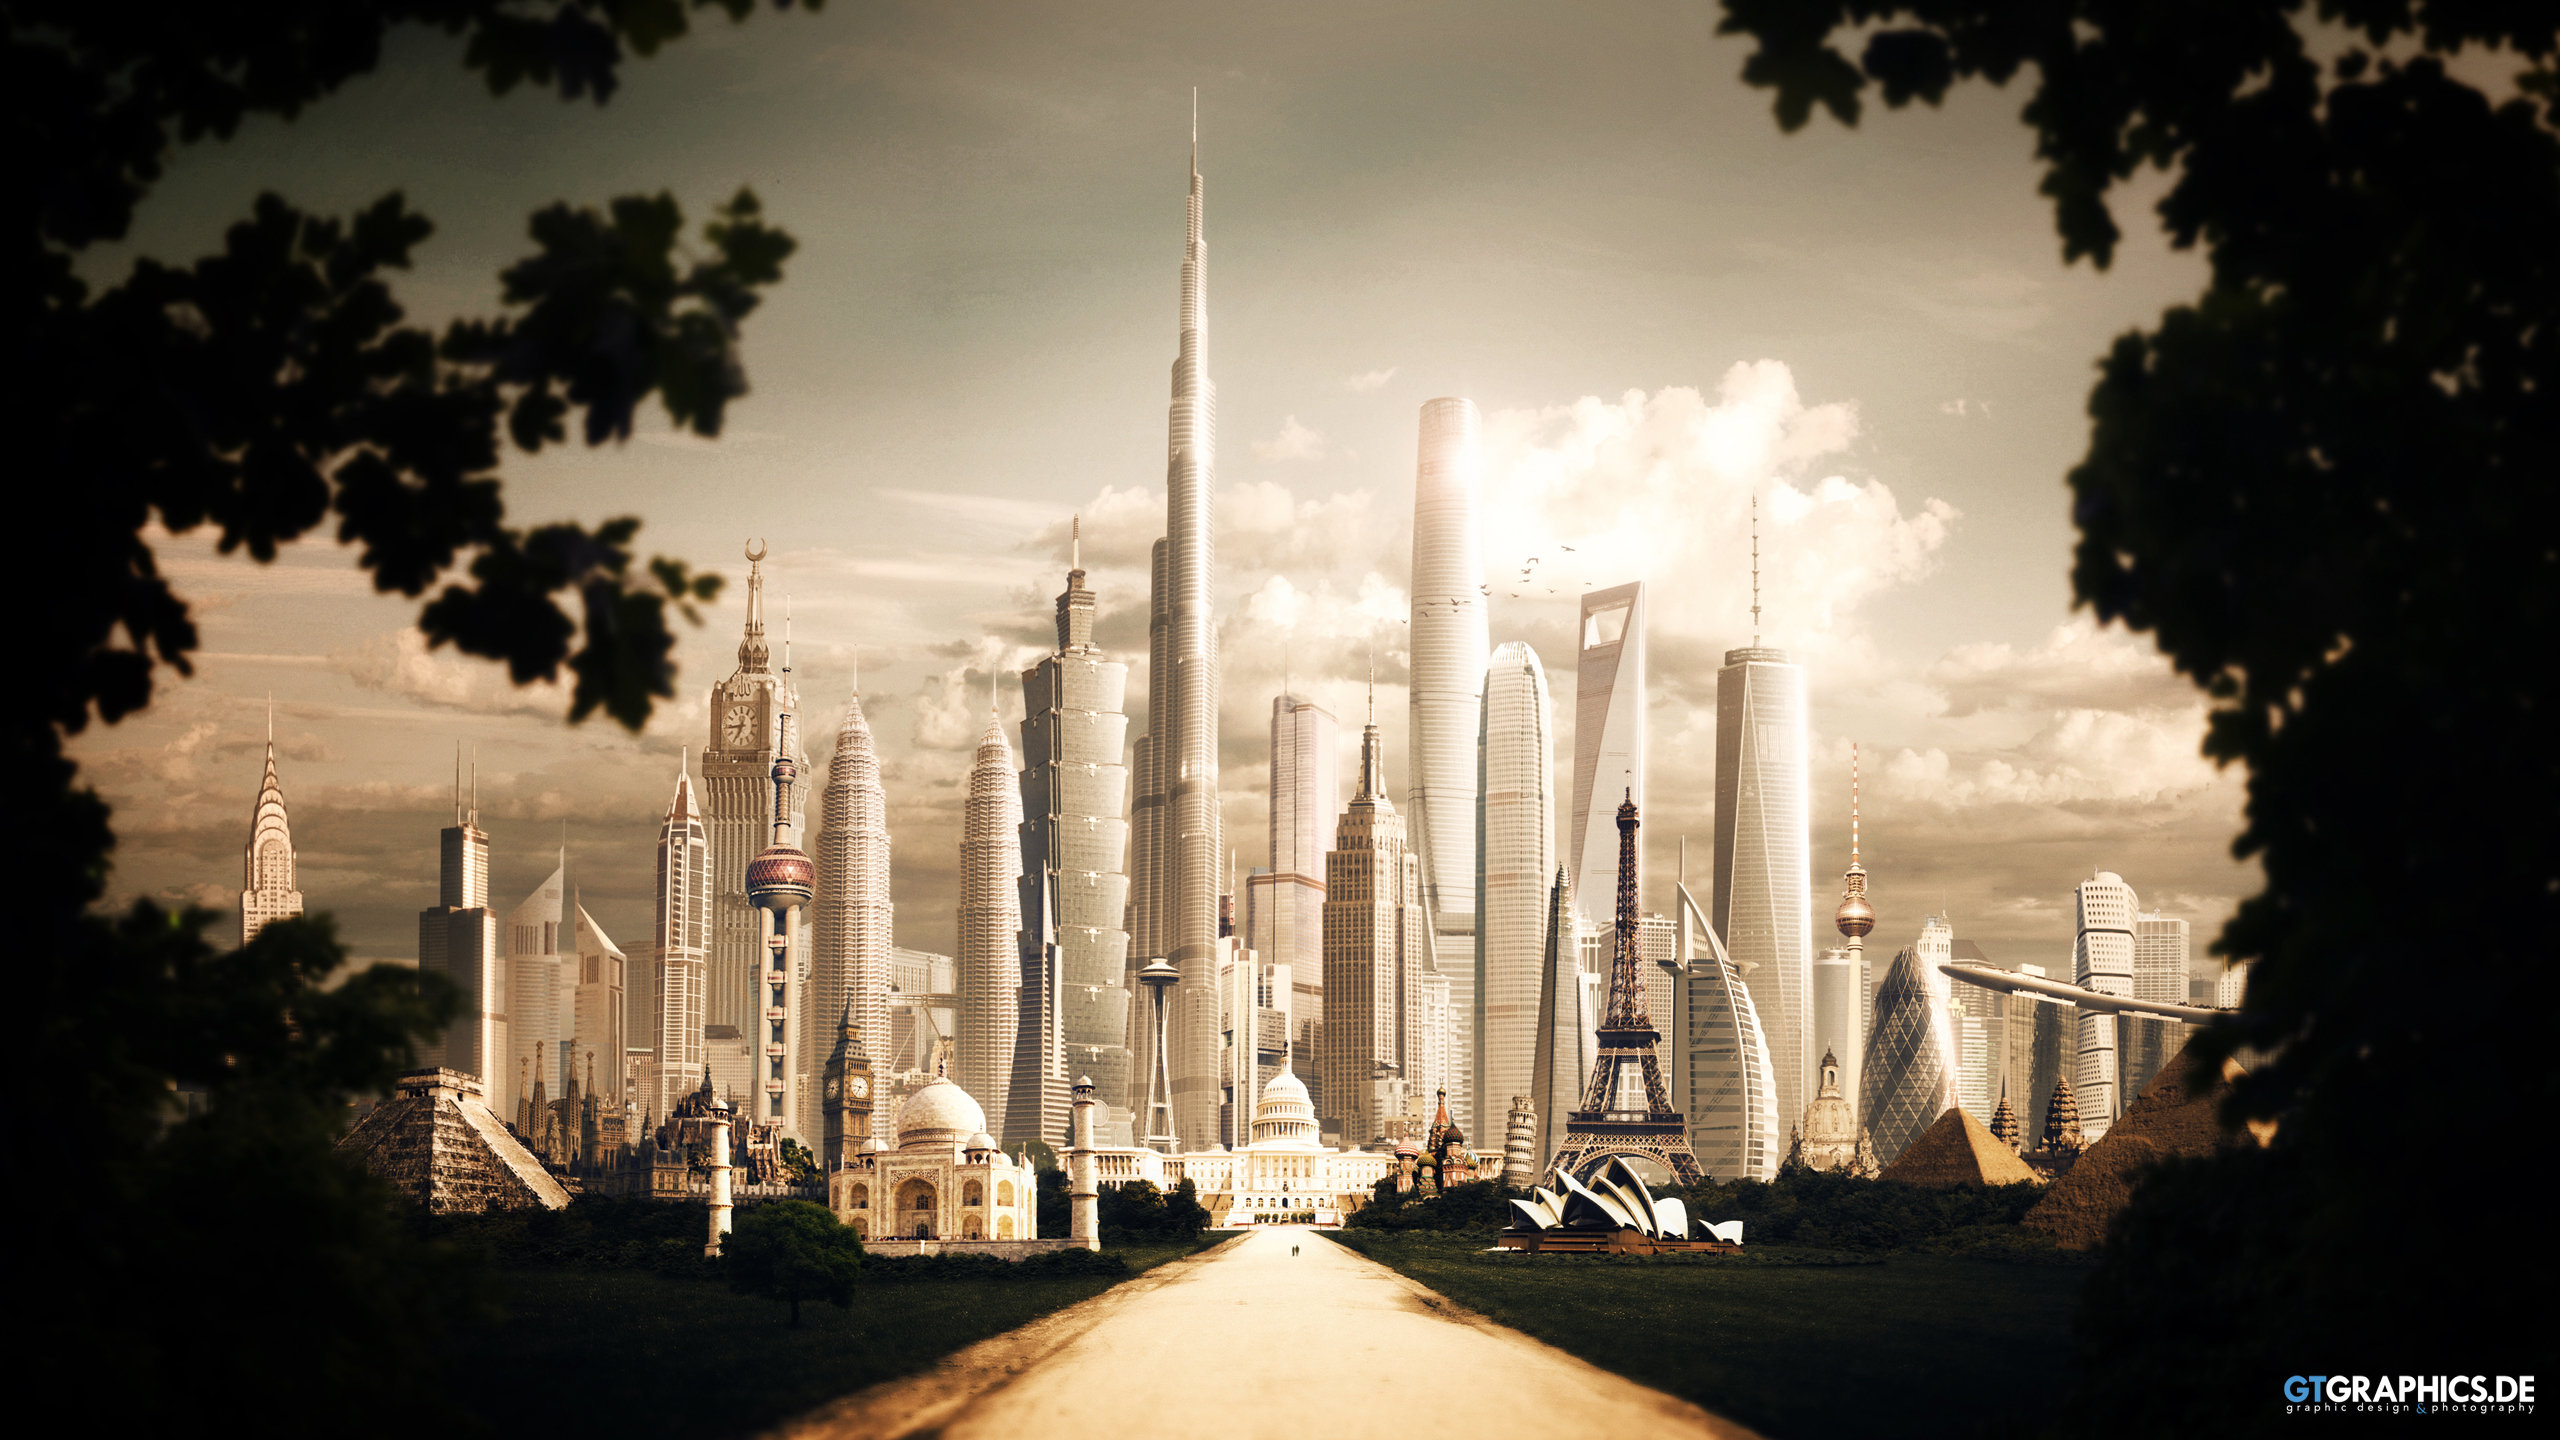 Sci Fi City 2560x1440